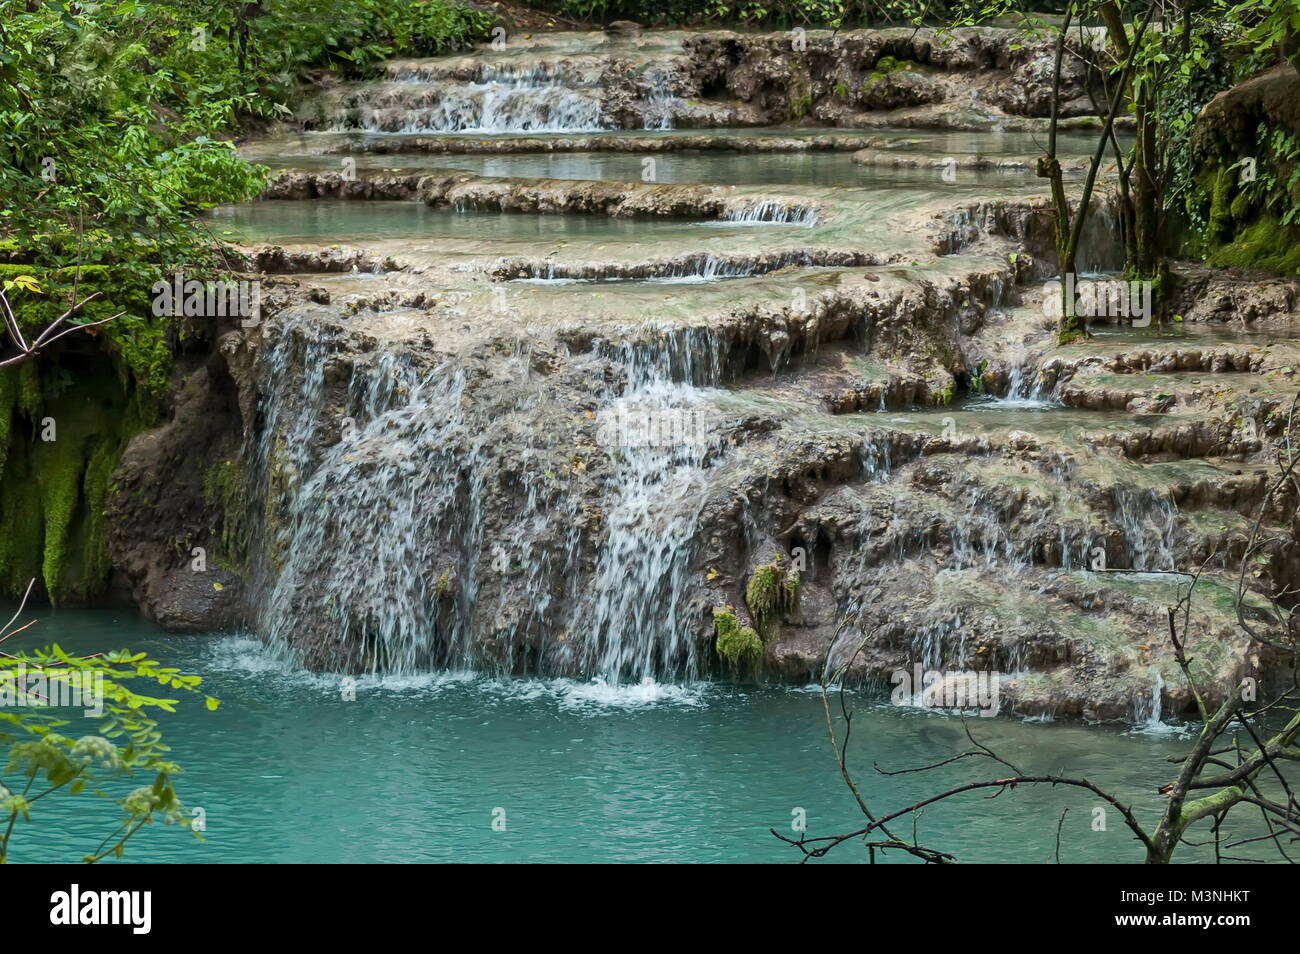 Teil der Krushuna Wasserfall Kaskade der Fluss in der Nähe von Dorf Proinovska Krushuna, Bulgarien Stockfoto